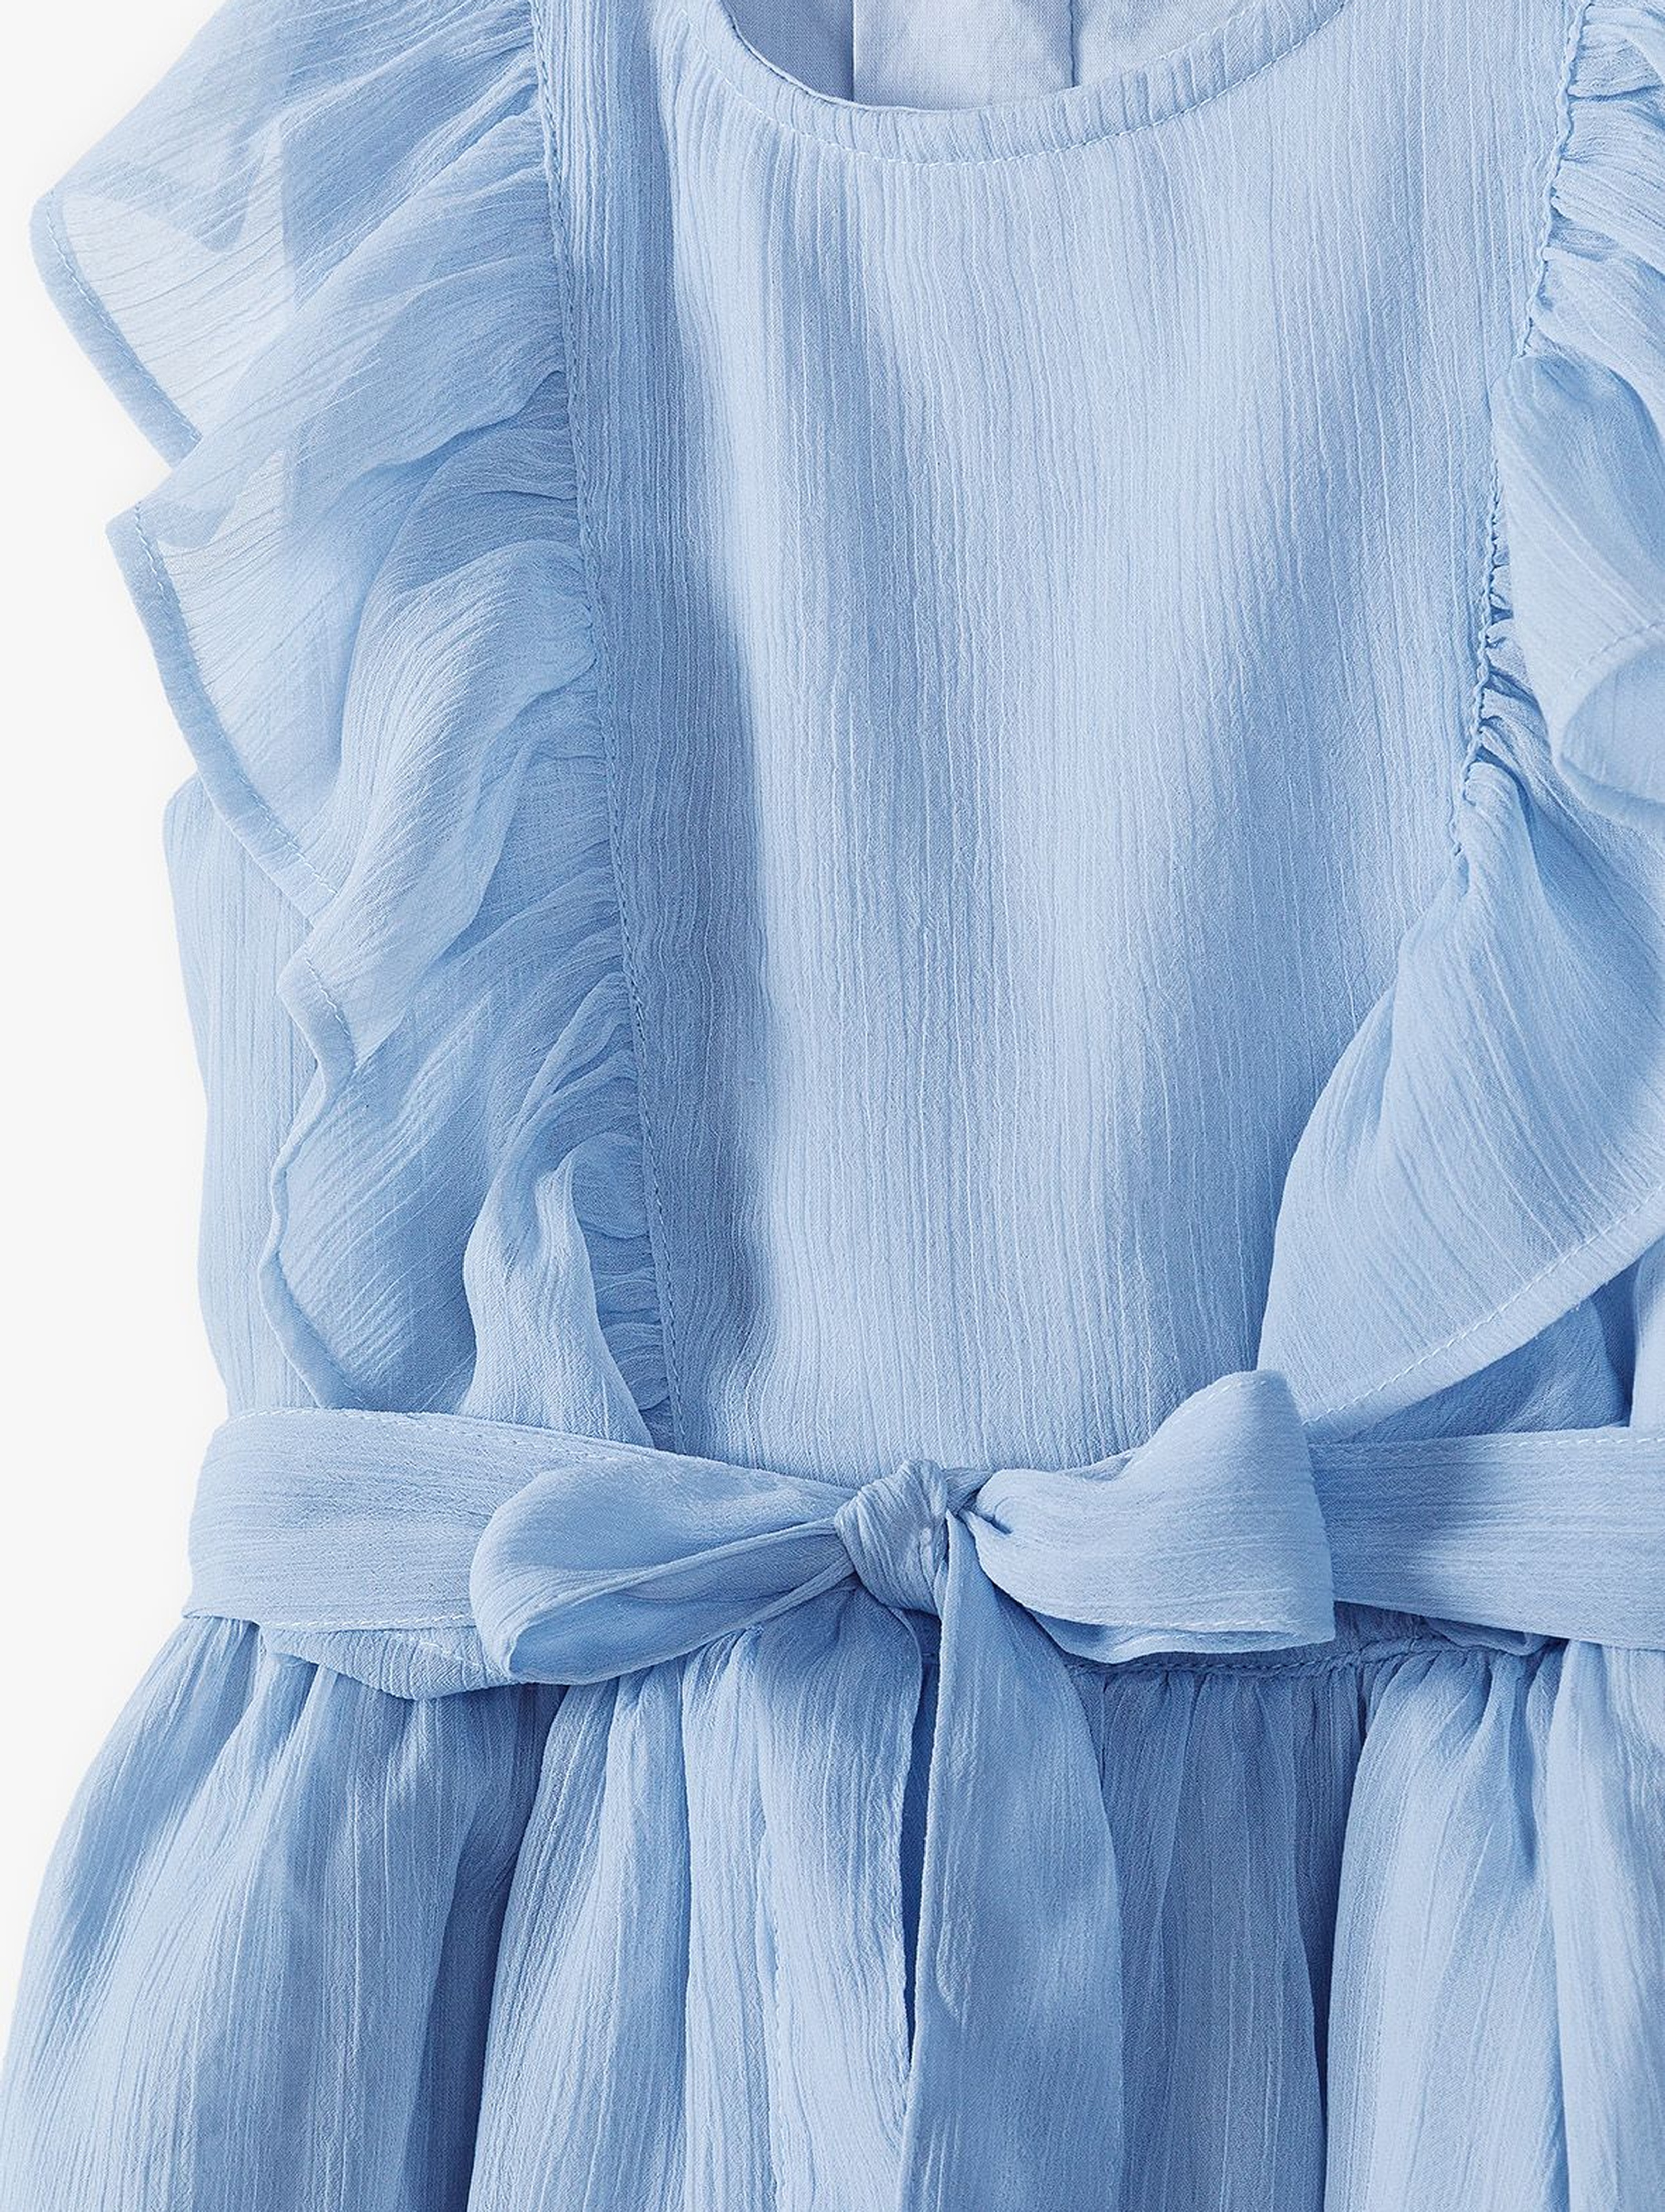 Tkaninowa sukienka dziewczęca - błękitna